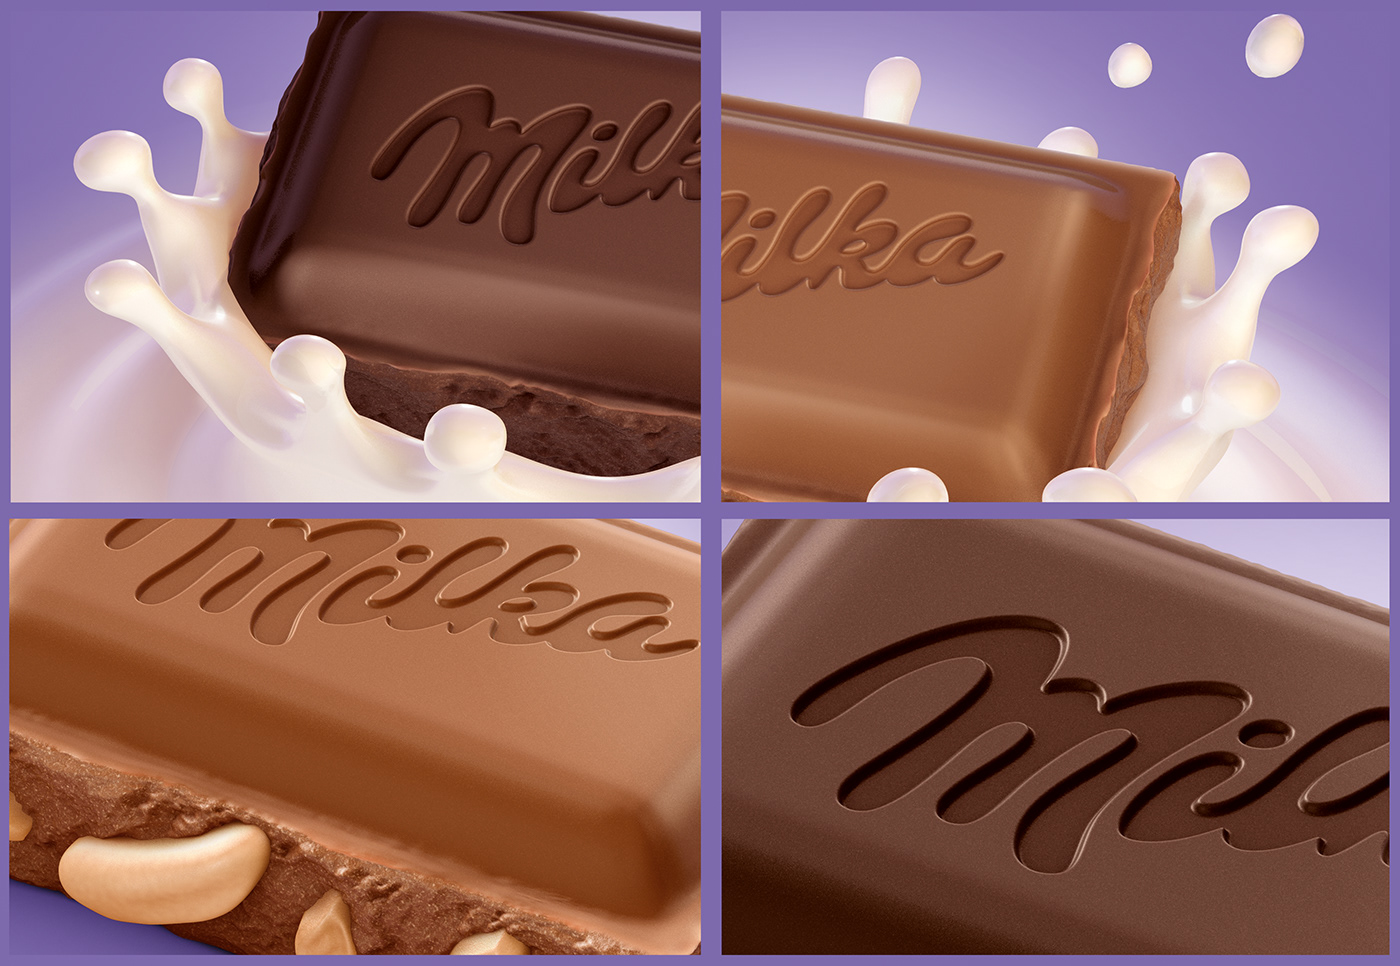 chocolate dark chocolate milk splash nuts peanuts sweet Packaging milka 3D